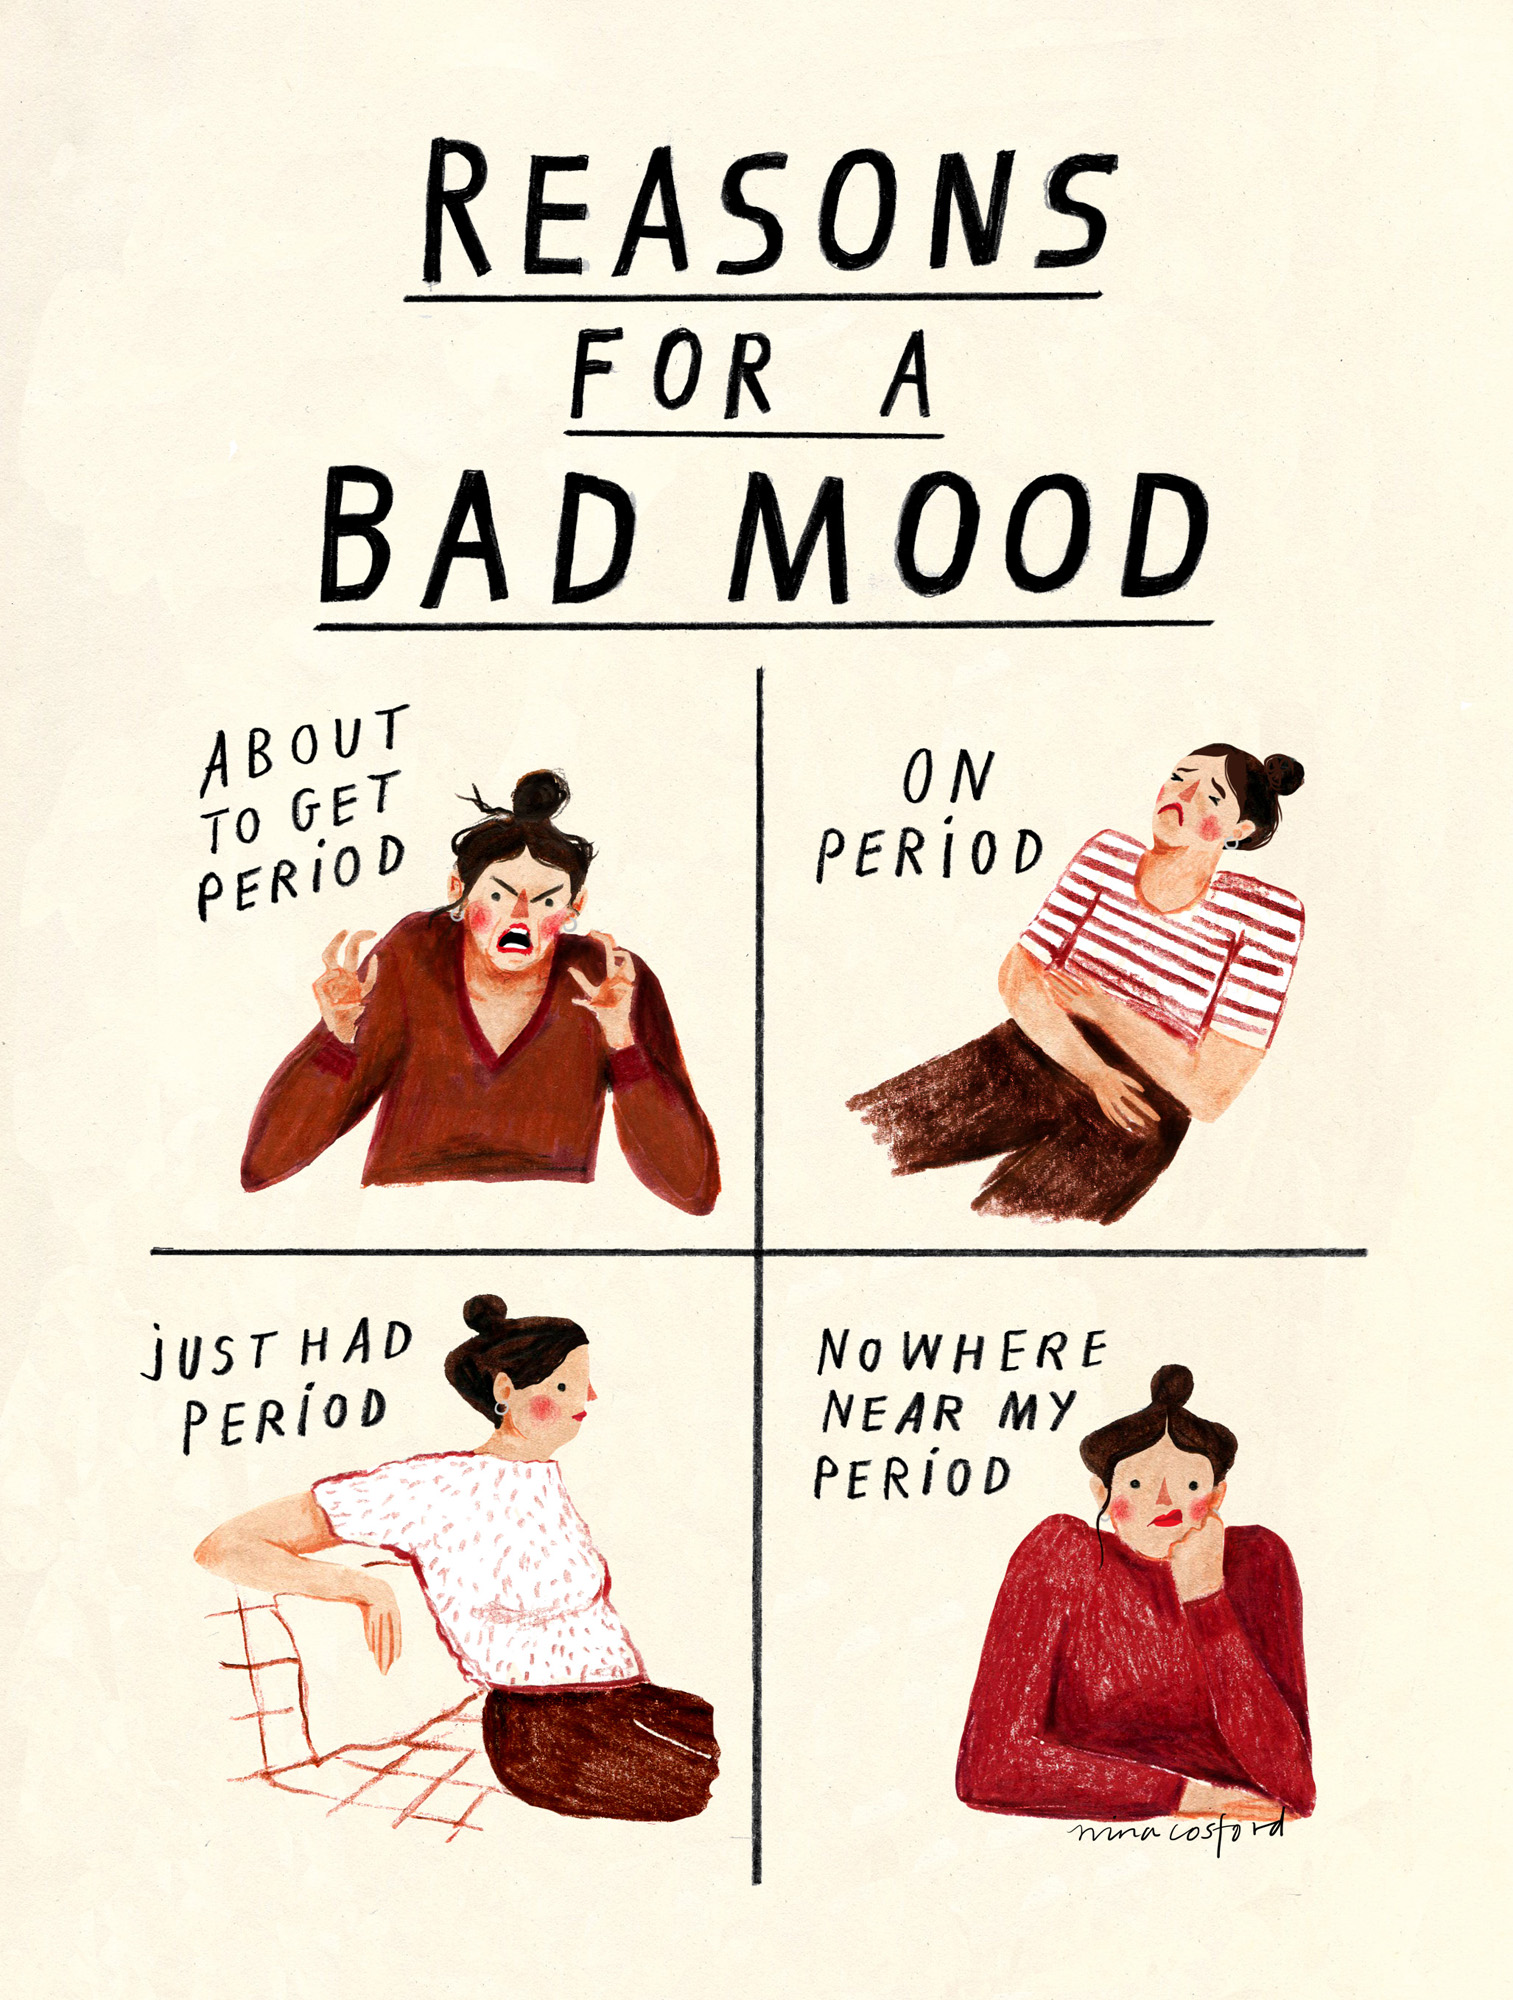 Nina Cosford Illustration - reasons for a bad mood